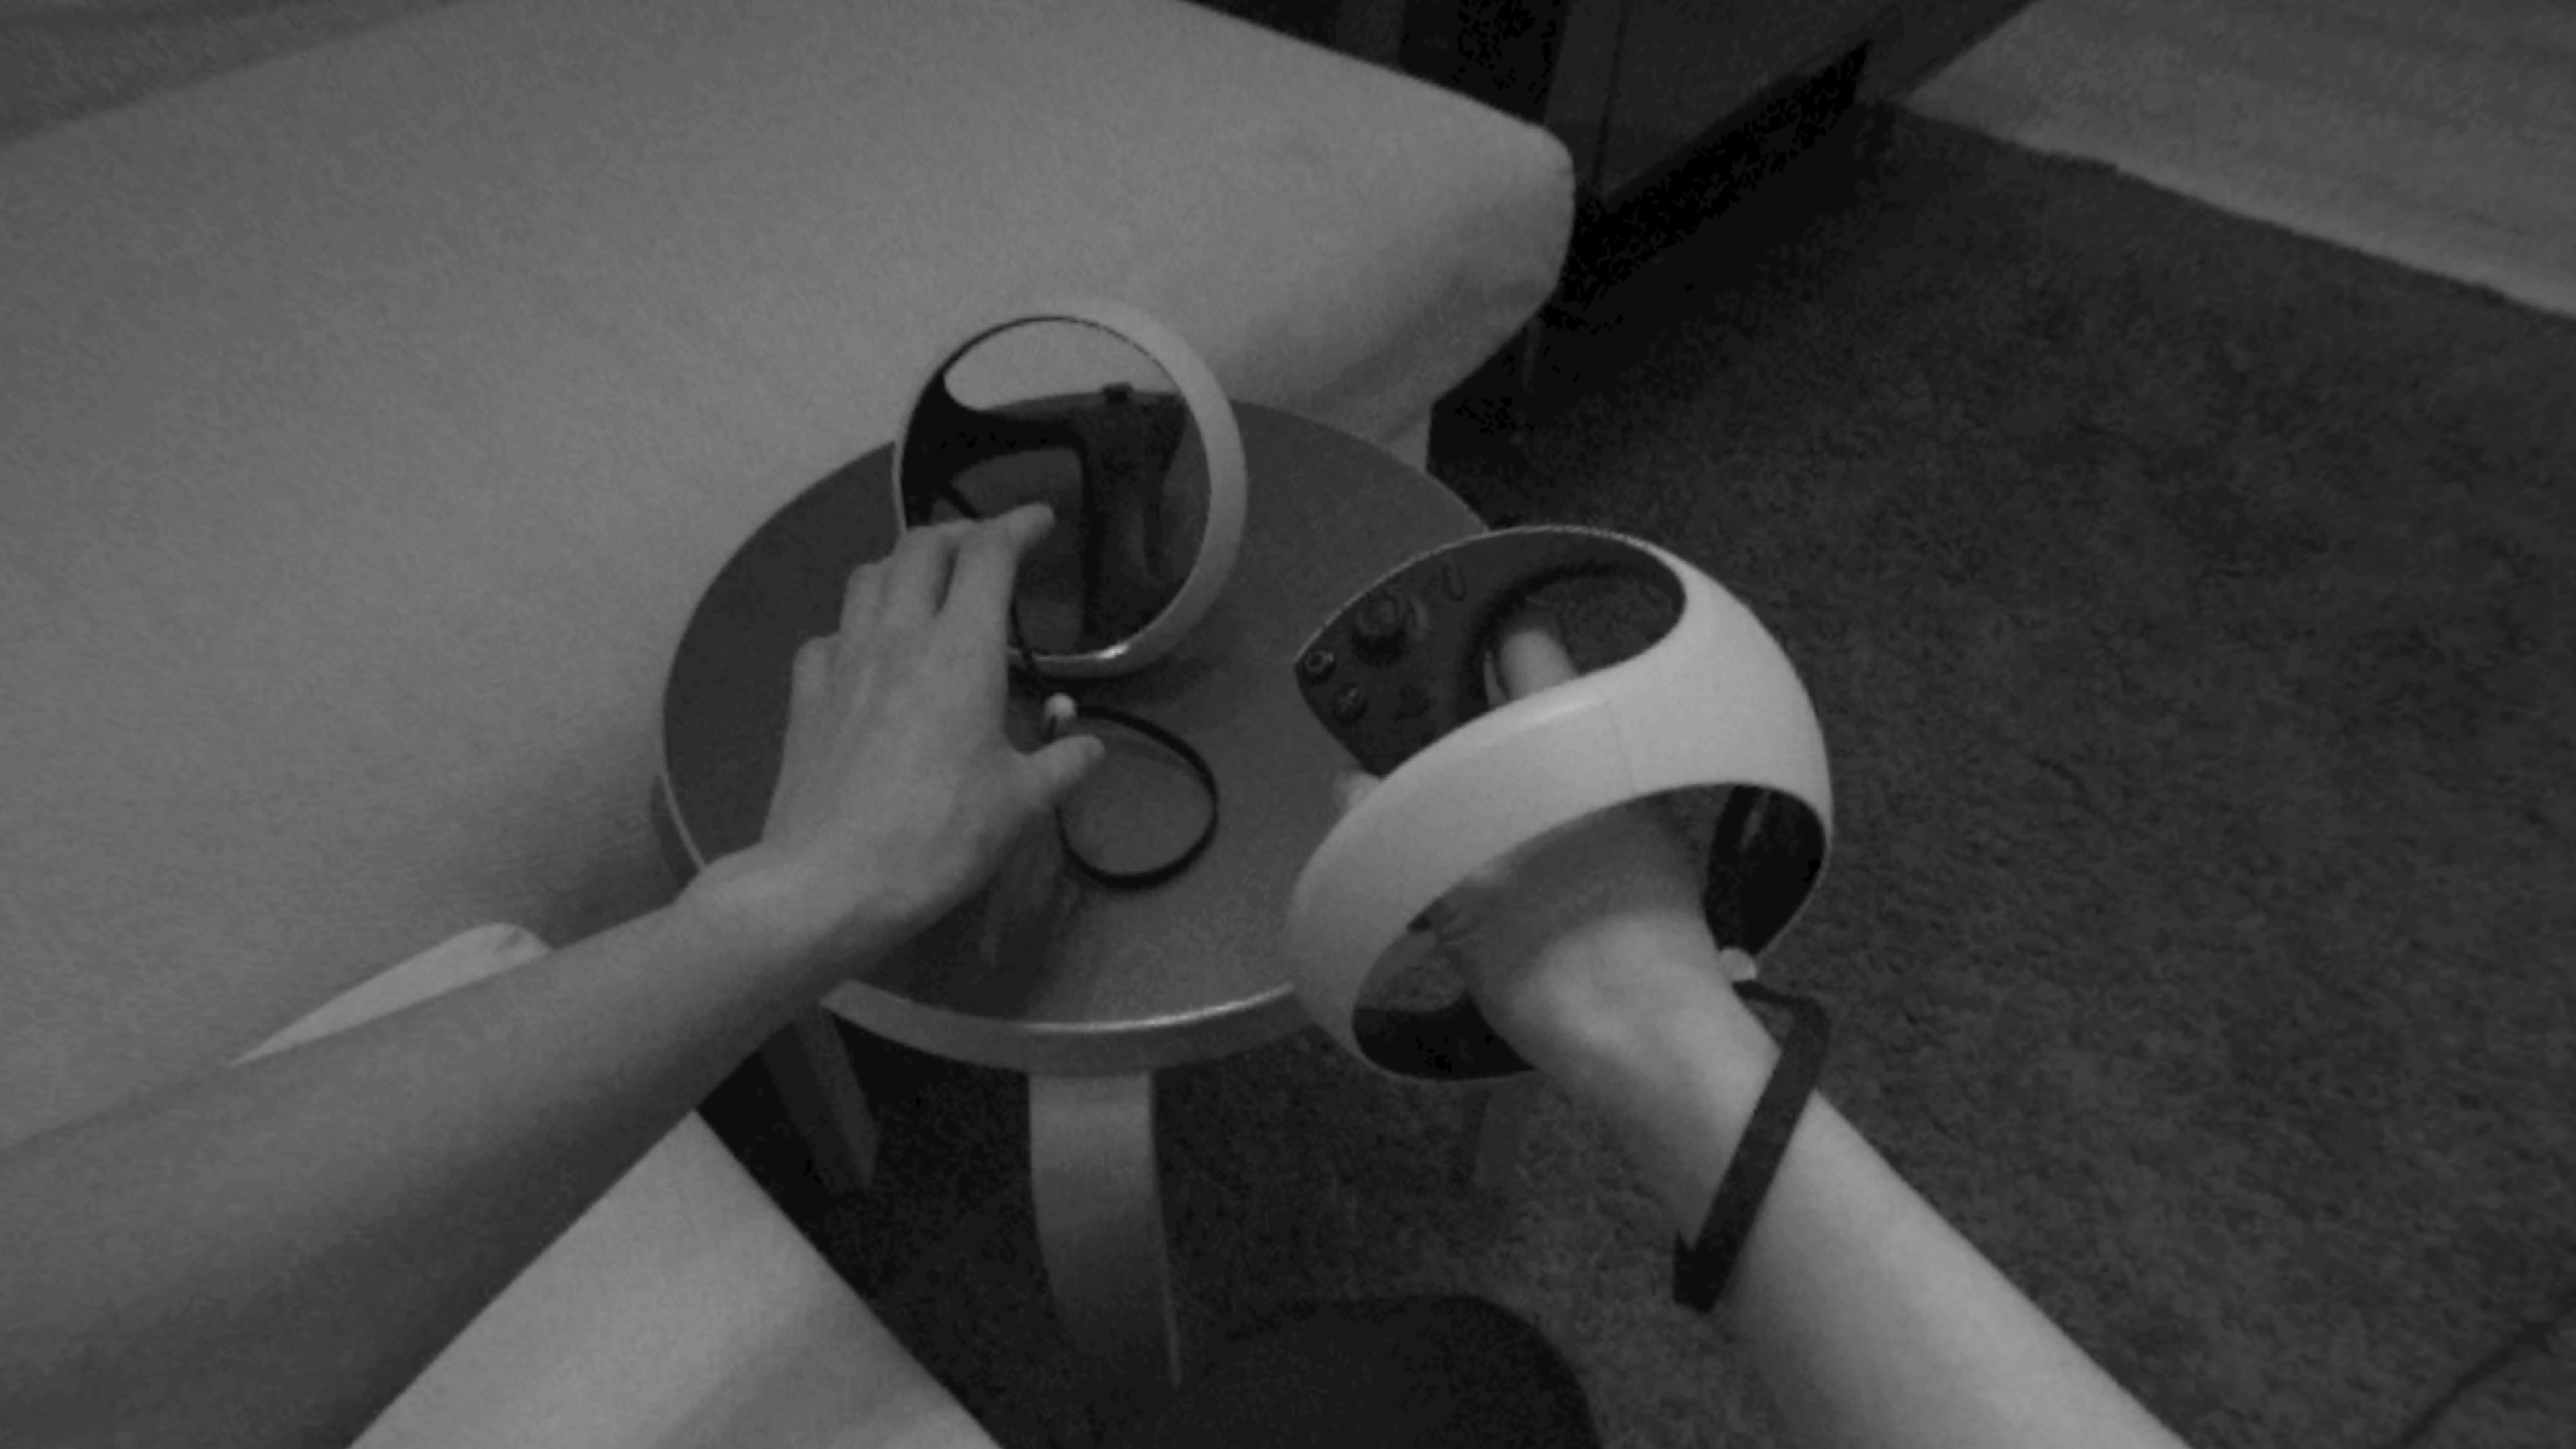 PlayStation VR2 nagra Cię podczas rozgrywki. Jest jedno "ale"